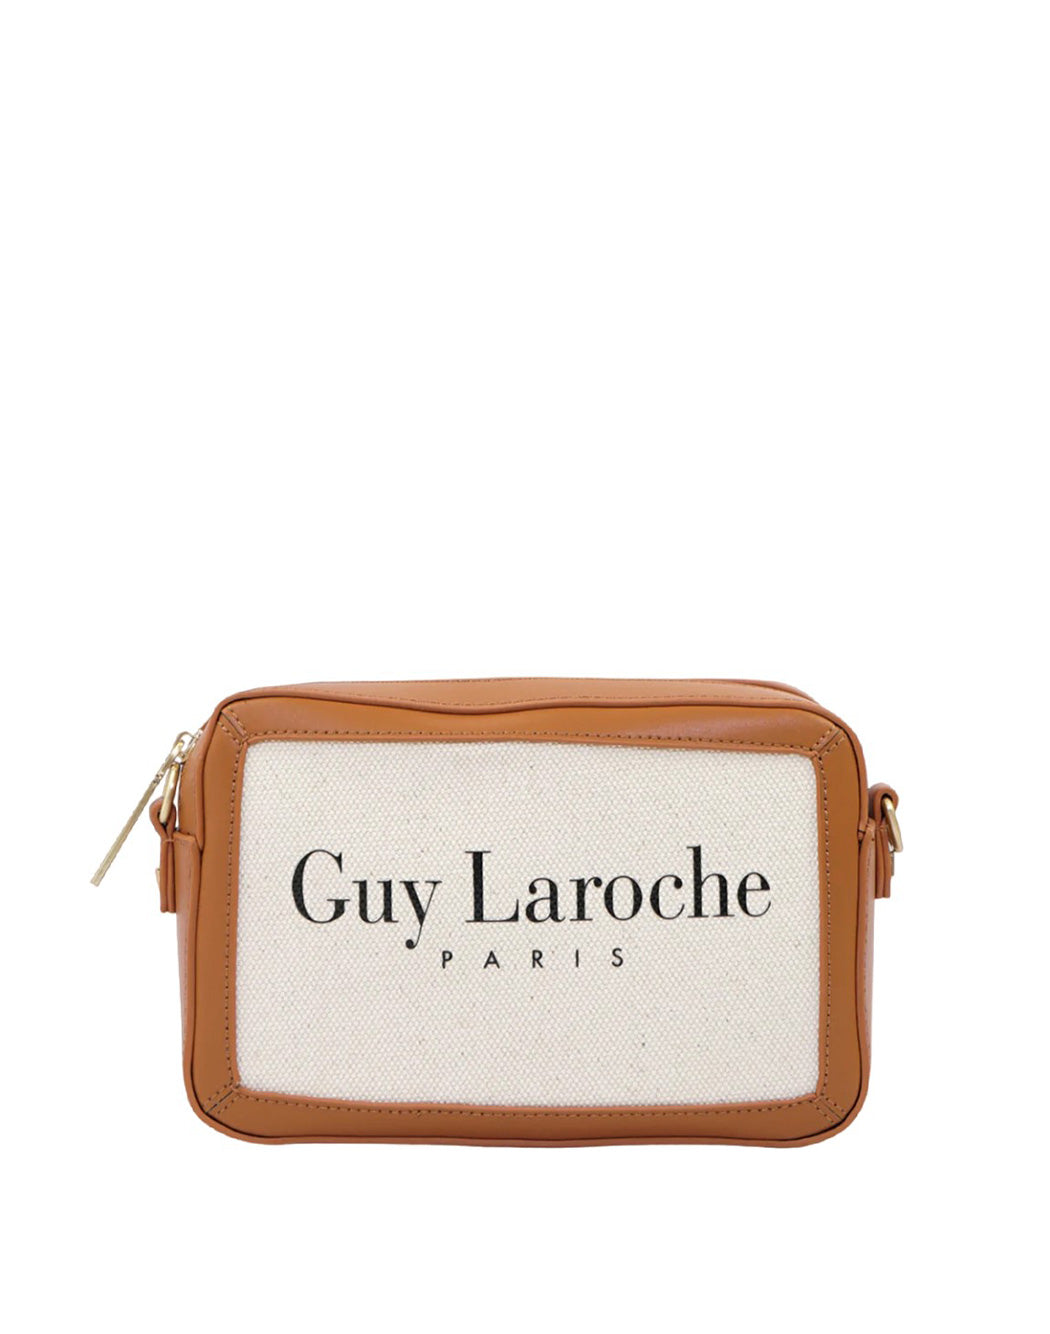 handbag – Guy Laroche Paris